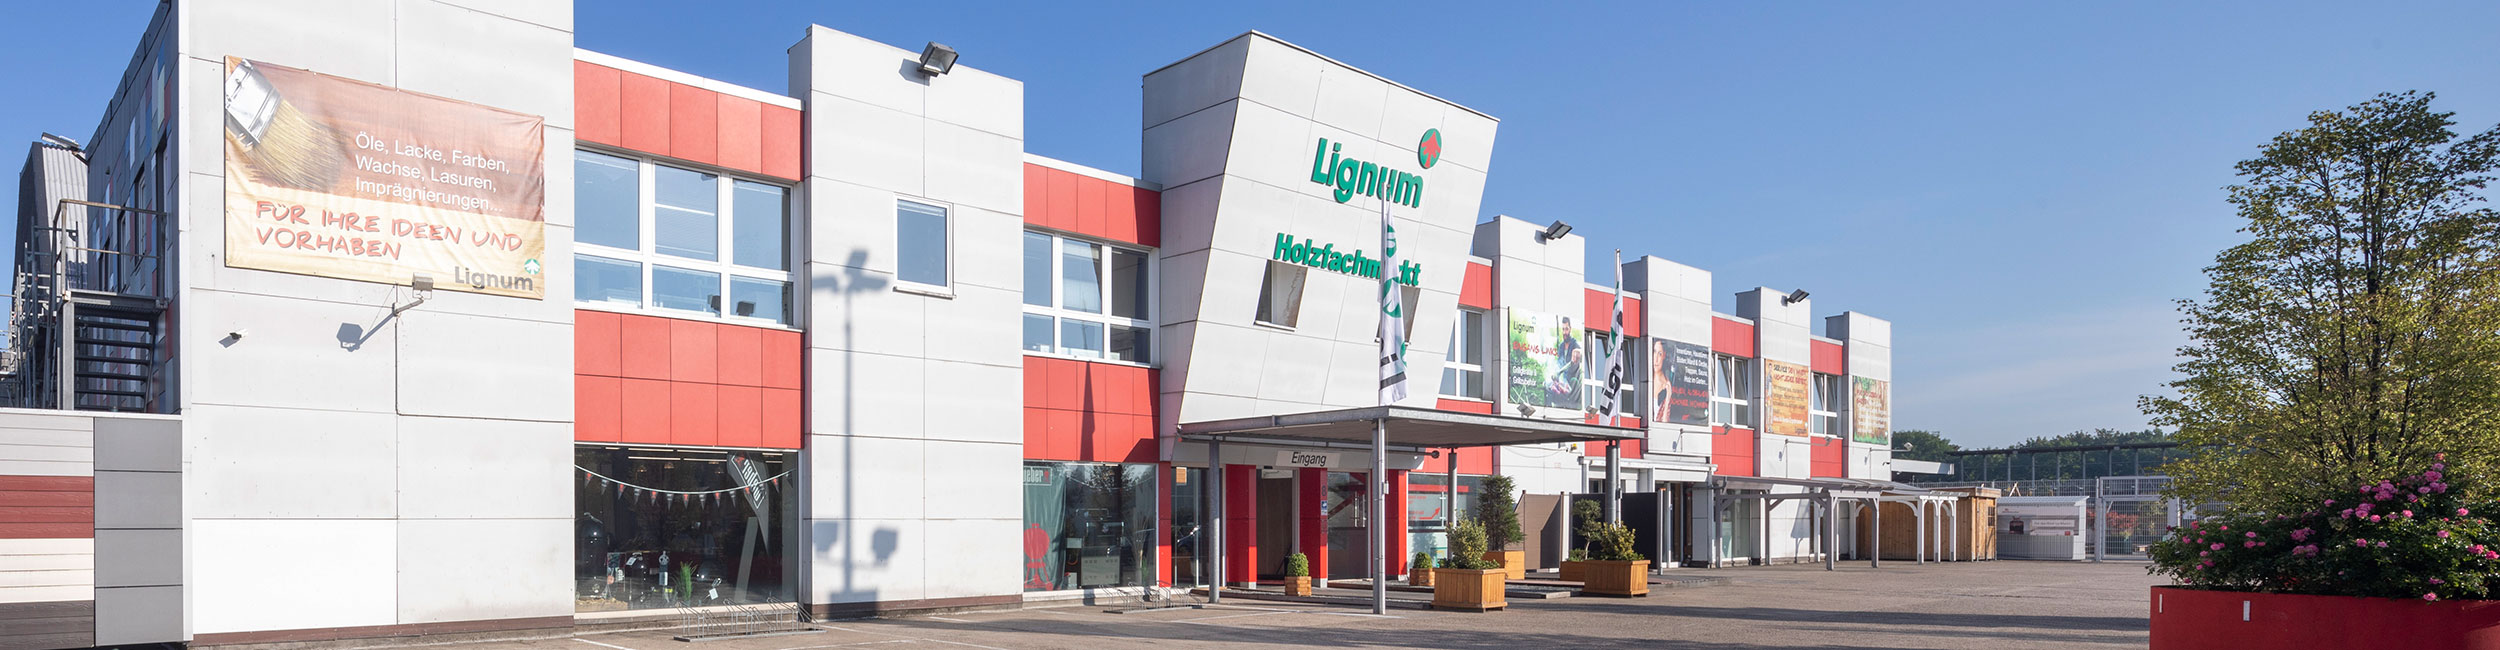 Lignum - Ihr HOLZPROFI in Münster